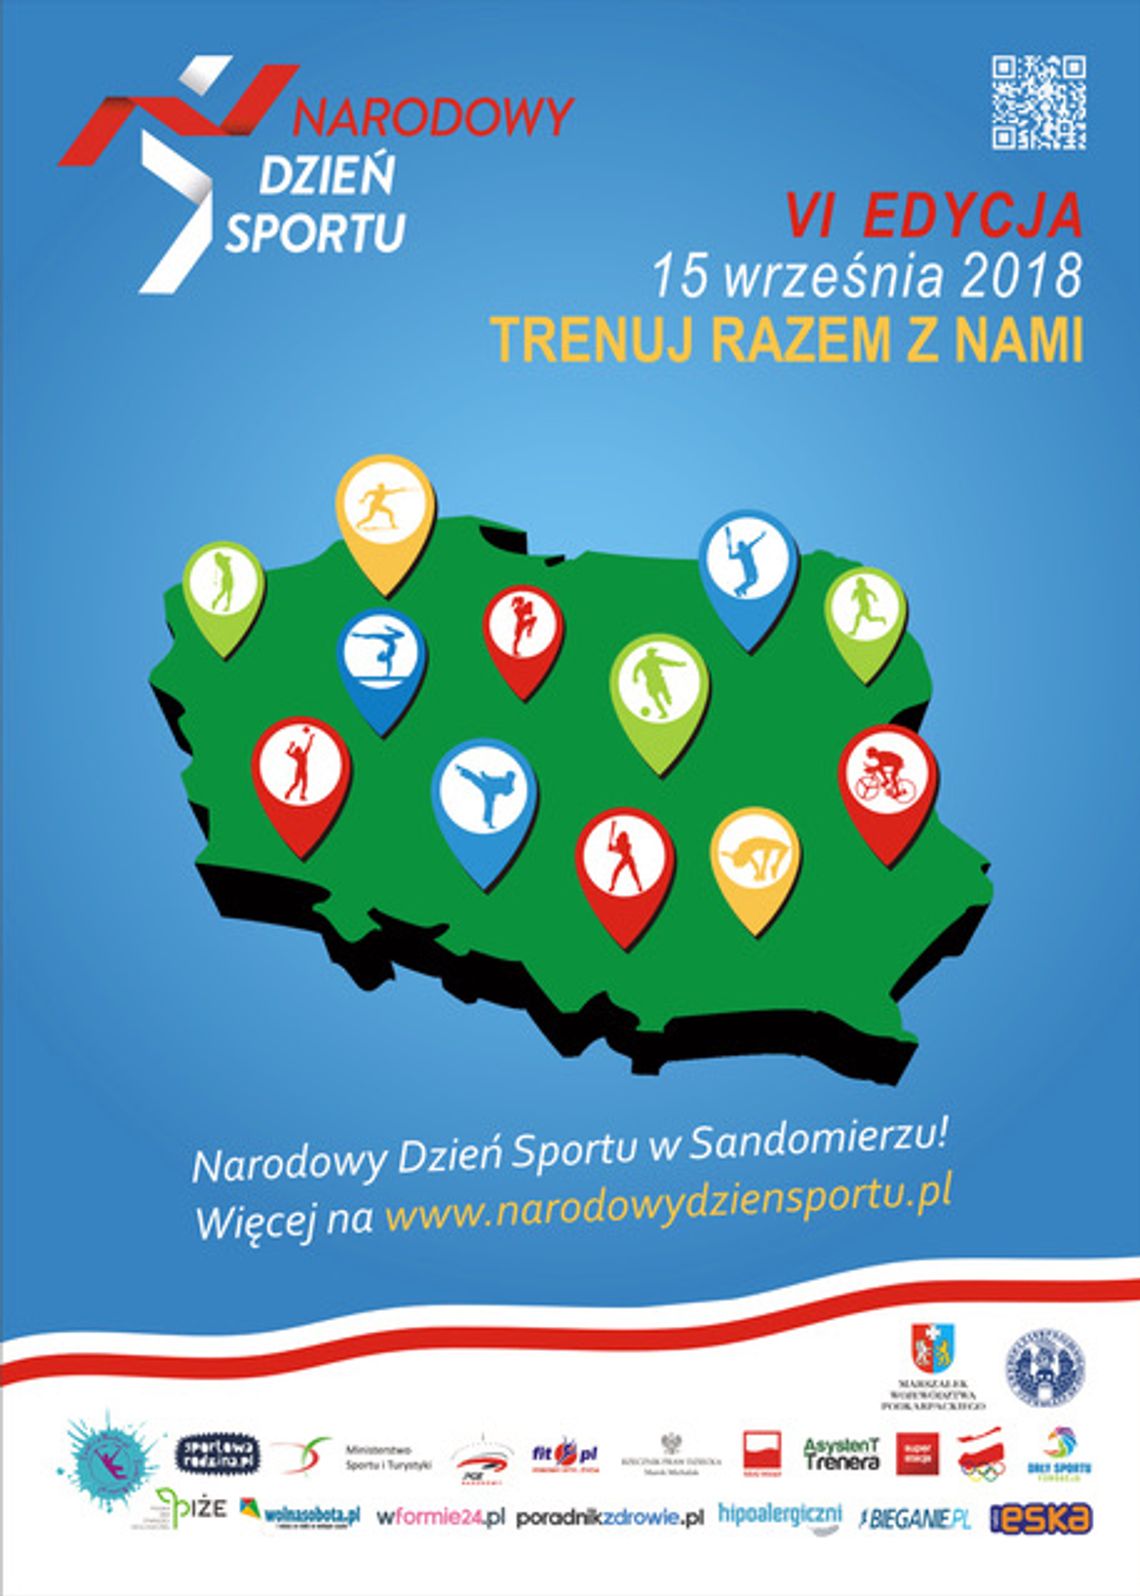 Narodowy Dzień Sportu w Sandomierzu